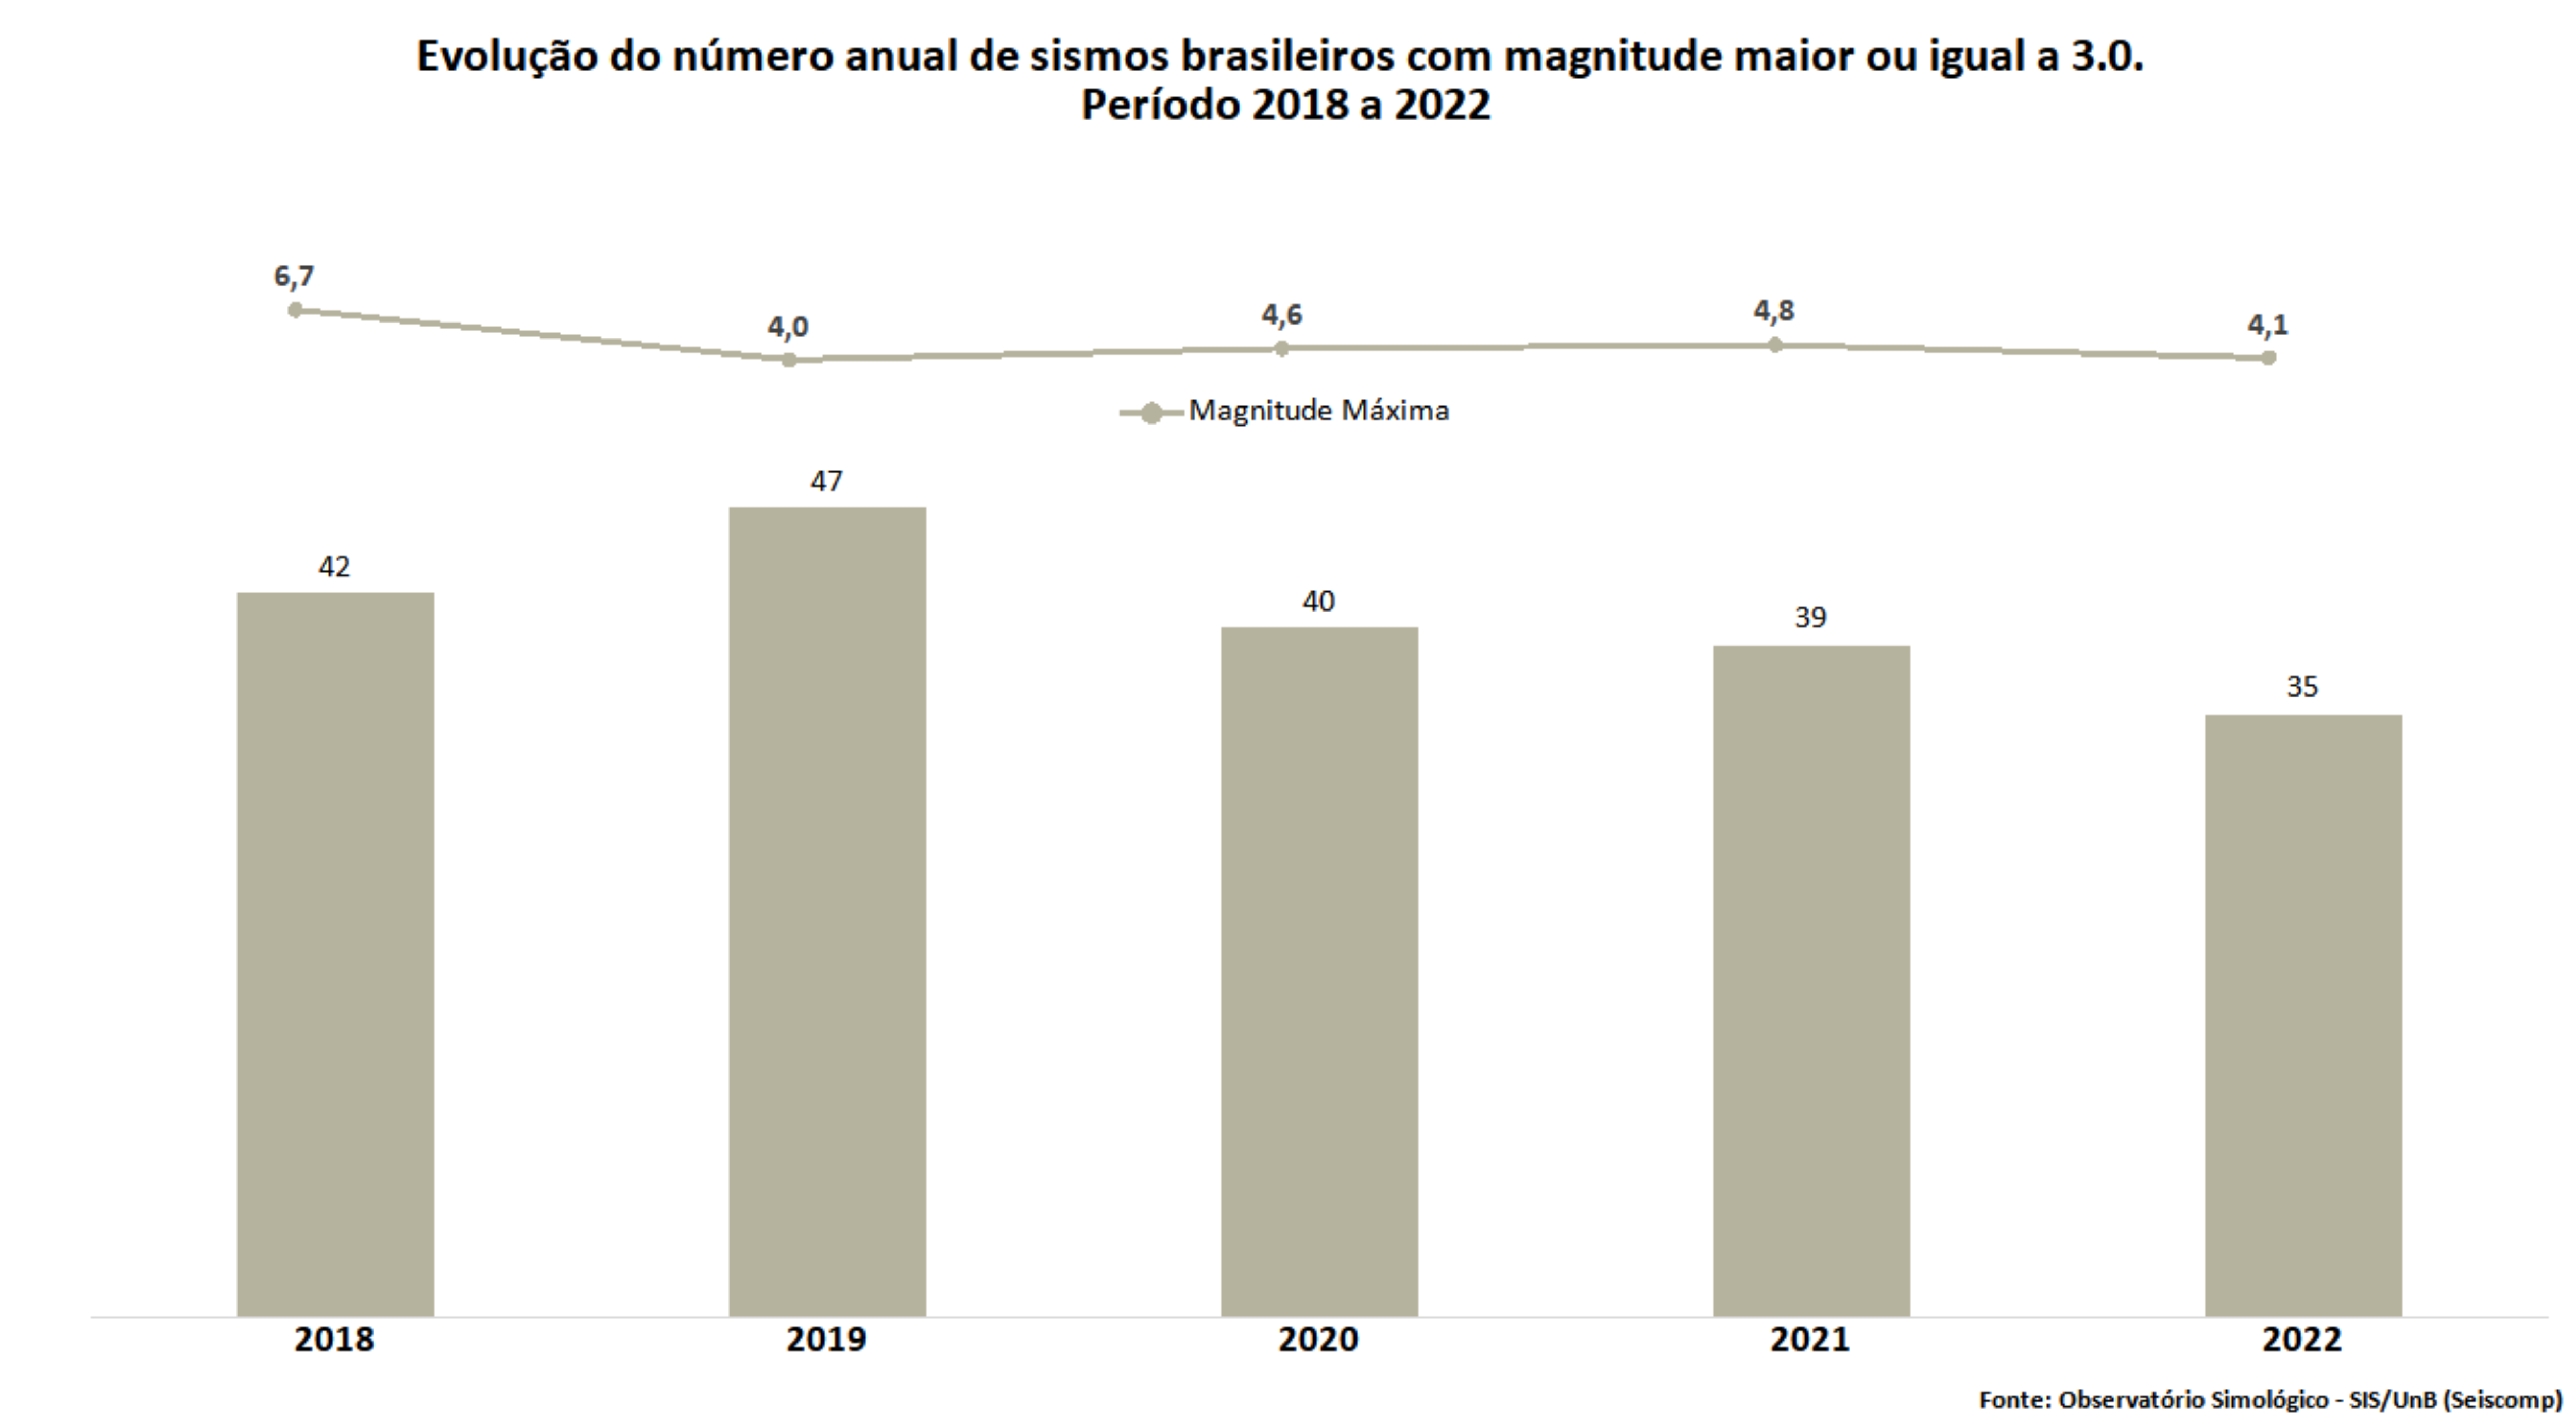 Evolução do número anual de sismos brasileiros com magnitude maior ou igual a 3.0, 2018 a 2022